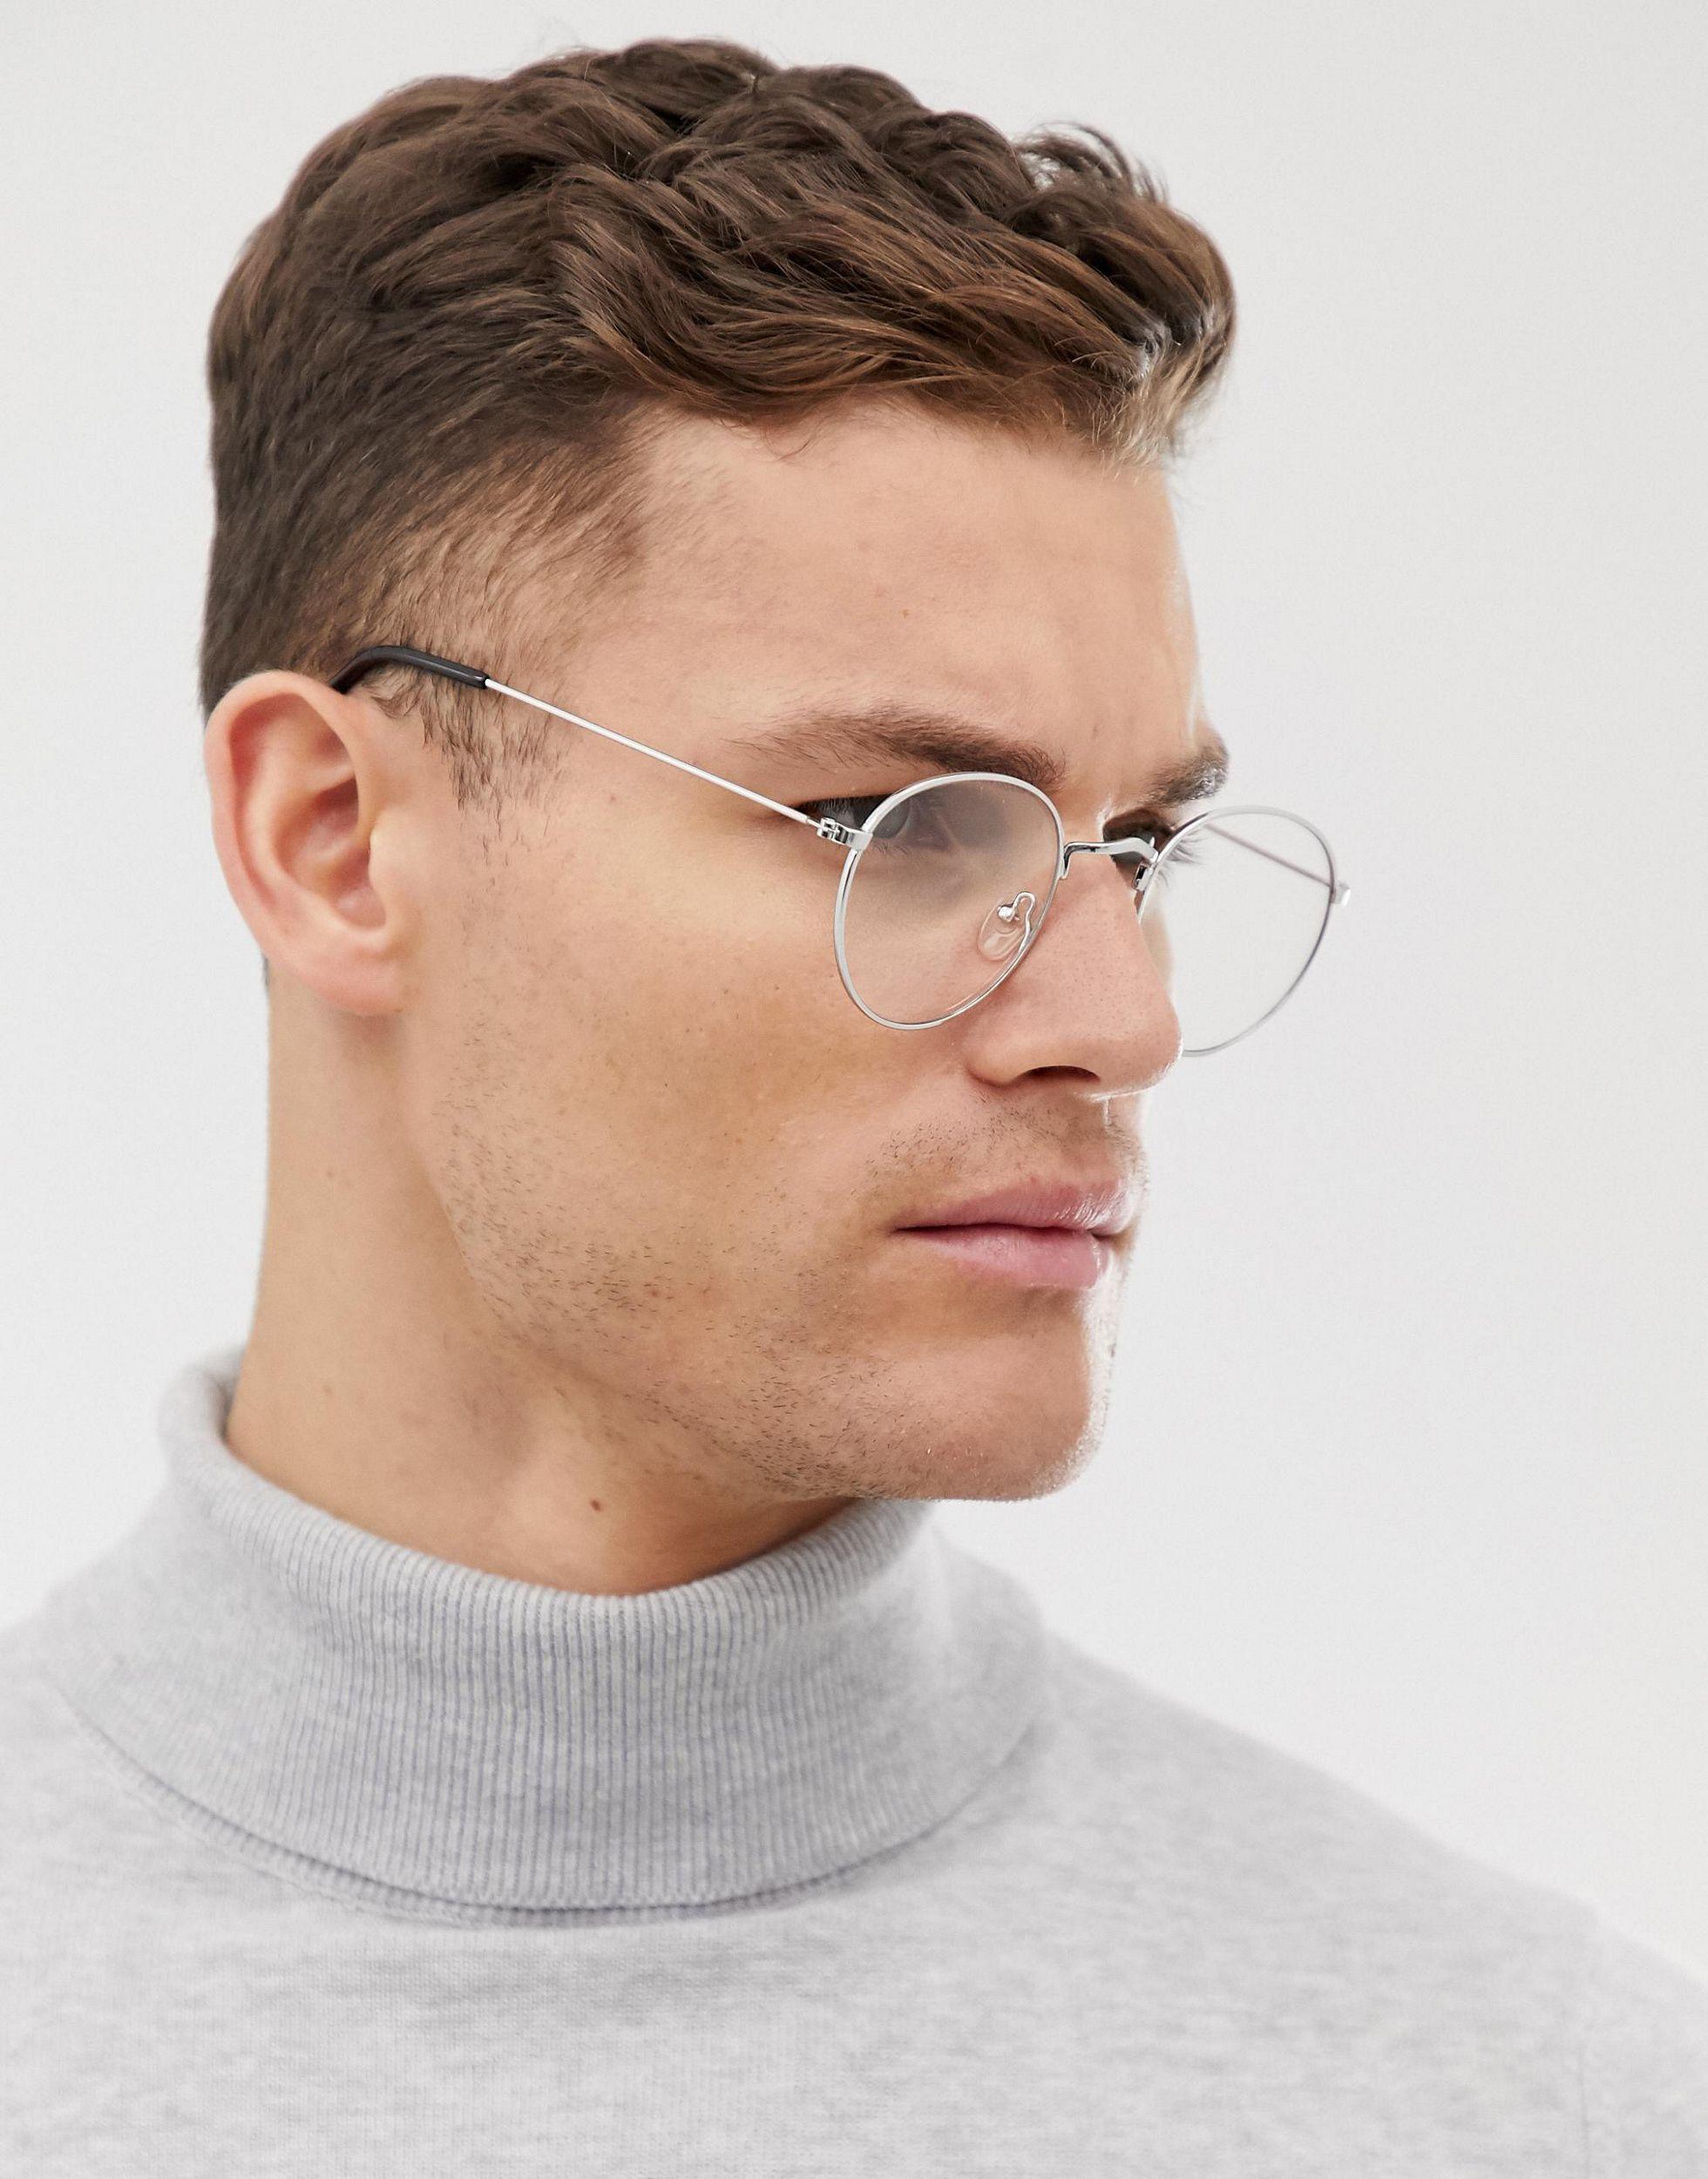 Купить недорогие мужские очки для зрения. Прозрачные очки мужские. Очки Авиаторы мужские для зрения. Круглые очки для зрения мужские. Модные мужские оправы.